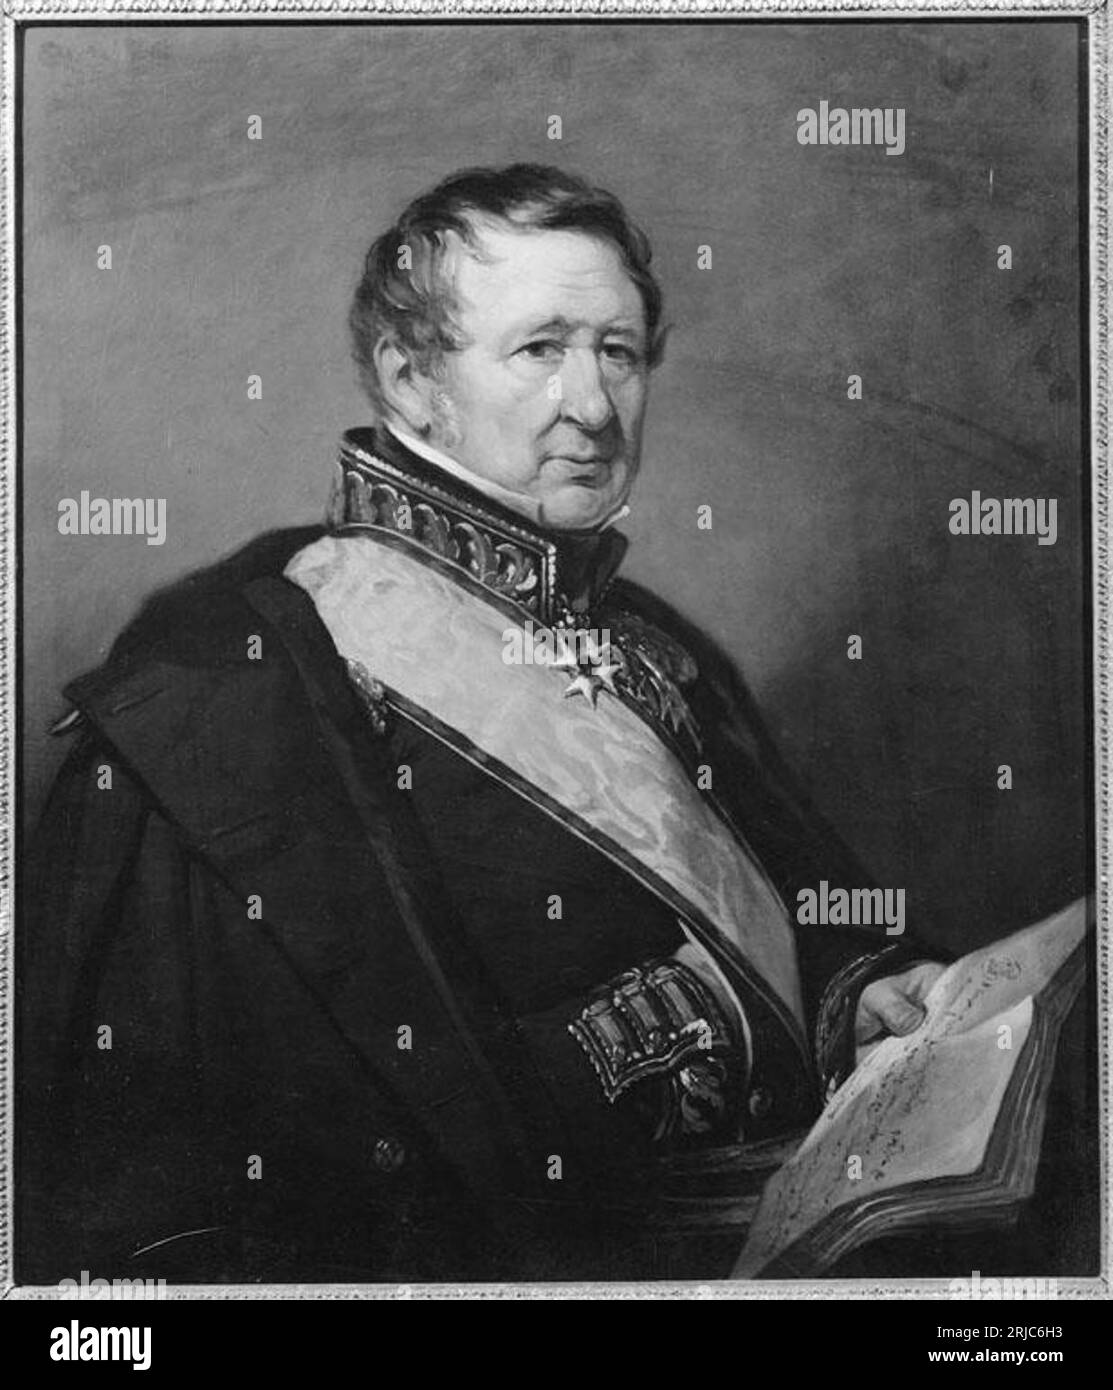 Karl Alexander Hård di Segerstad (1768-1840), maggiore generale, collezionista d'arte, donatore prima del 1840 da Johan Gustaf Sandberg Foto Stock